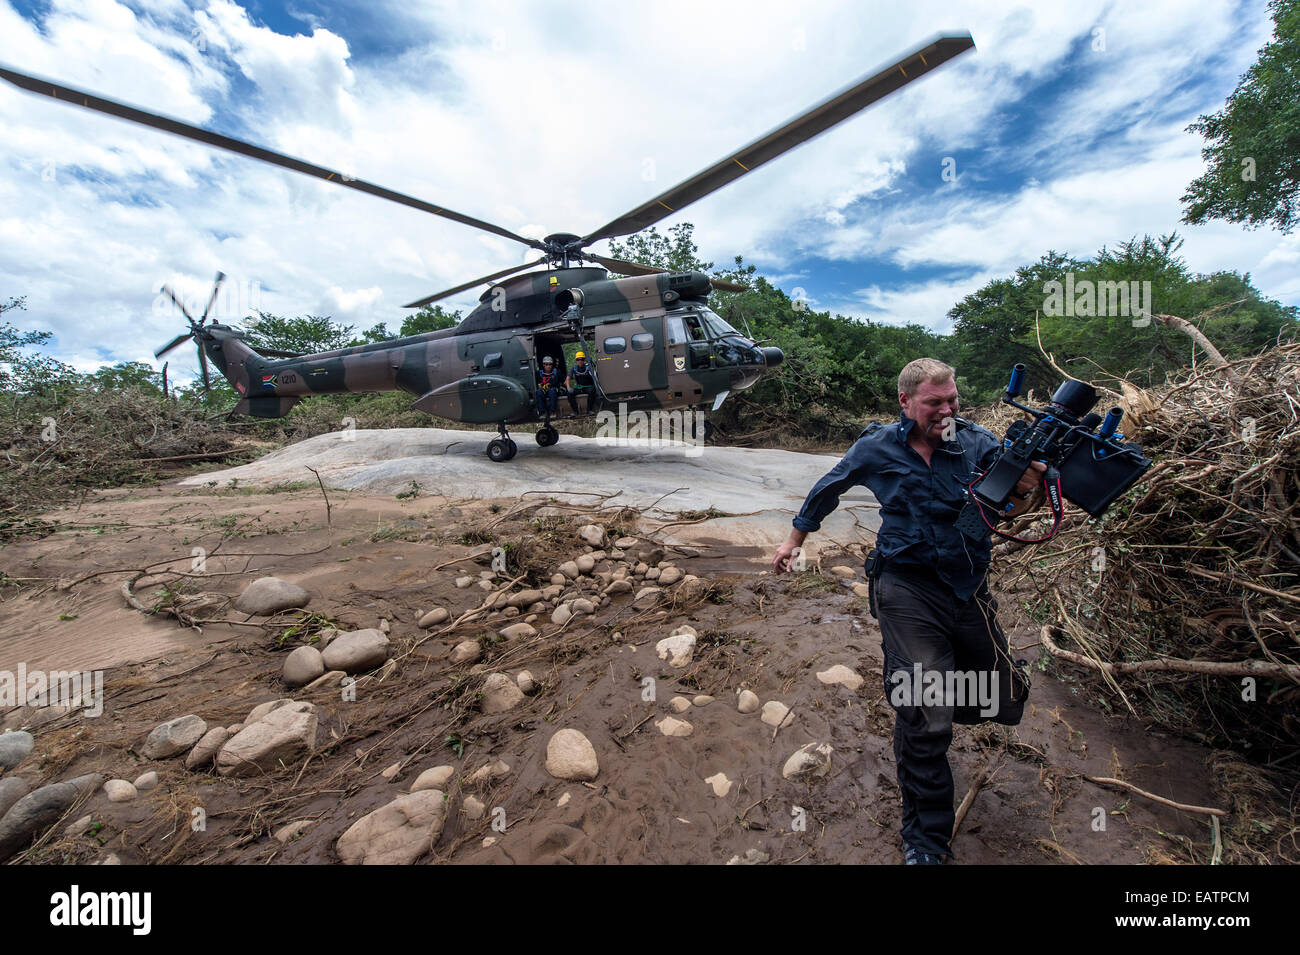 Un camarógrafo se ejecuta a partir de la corriente descendente de una fuerza aérea del helicóptero. Foto de stock